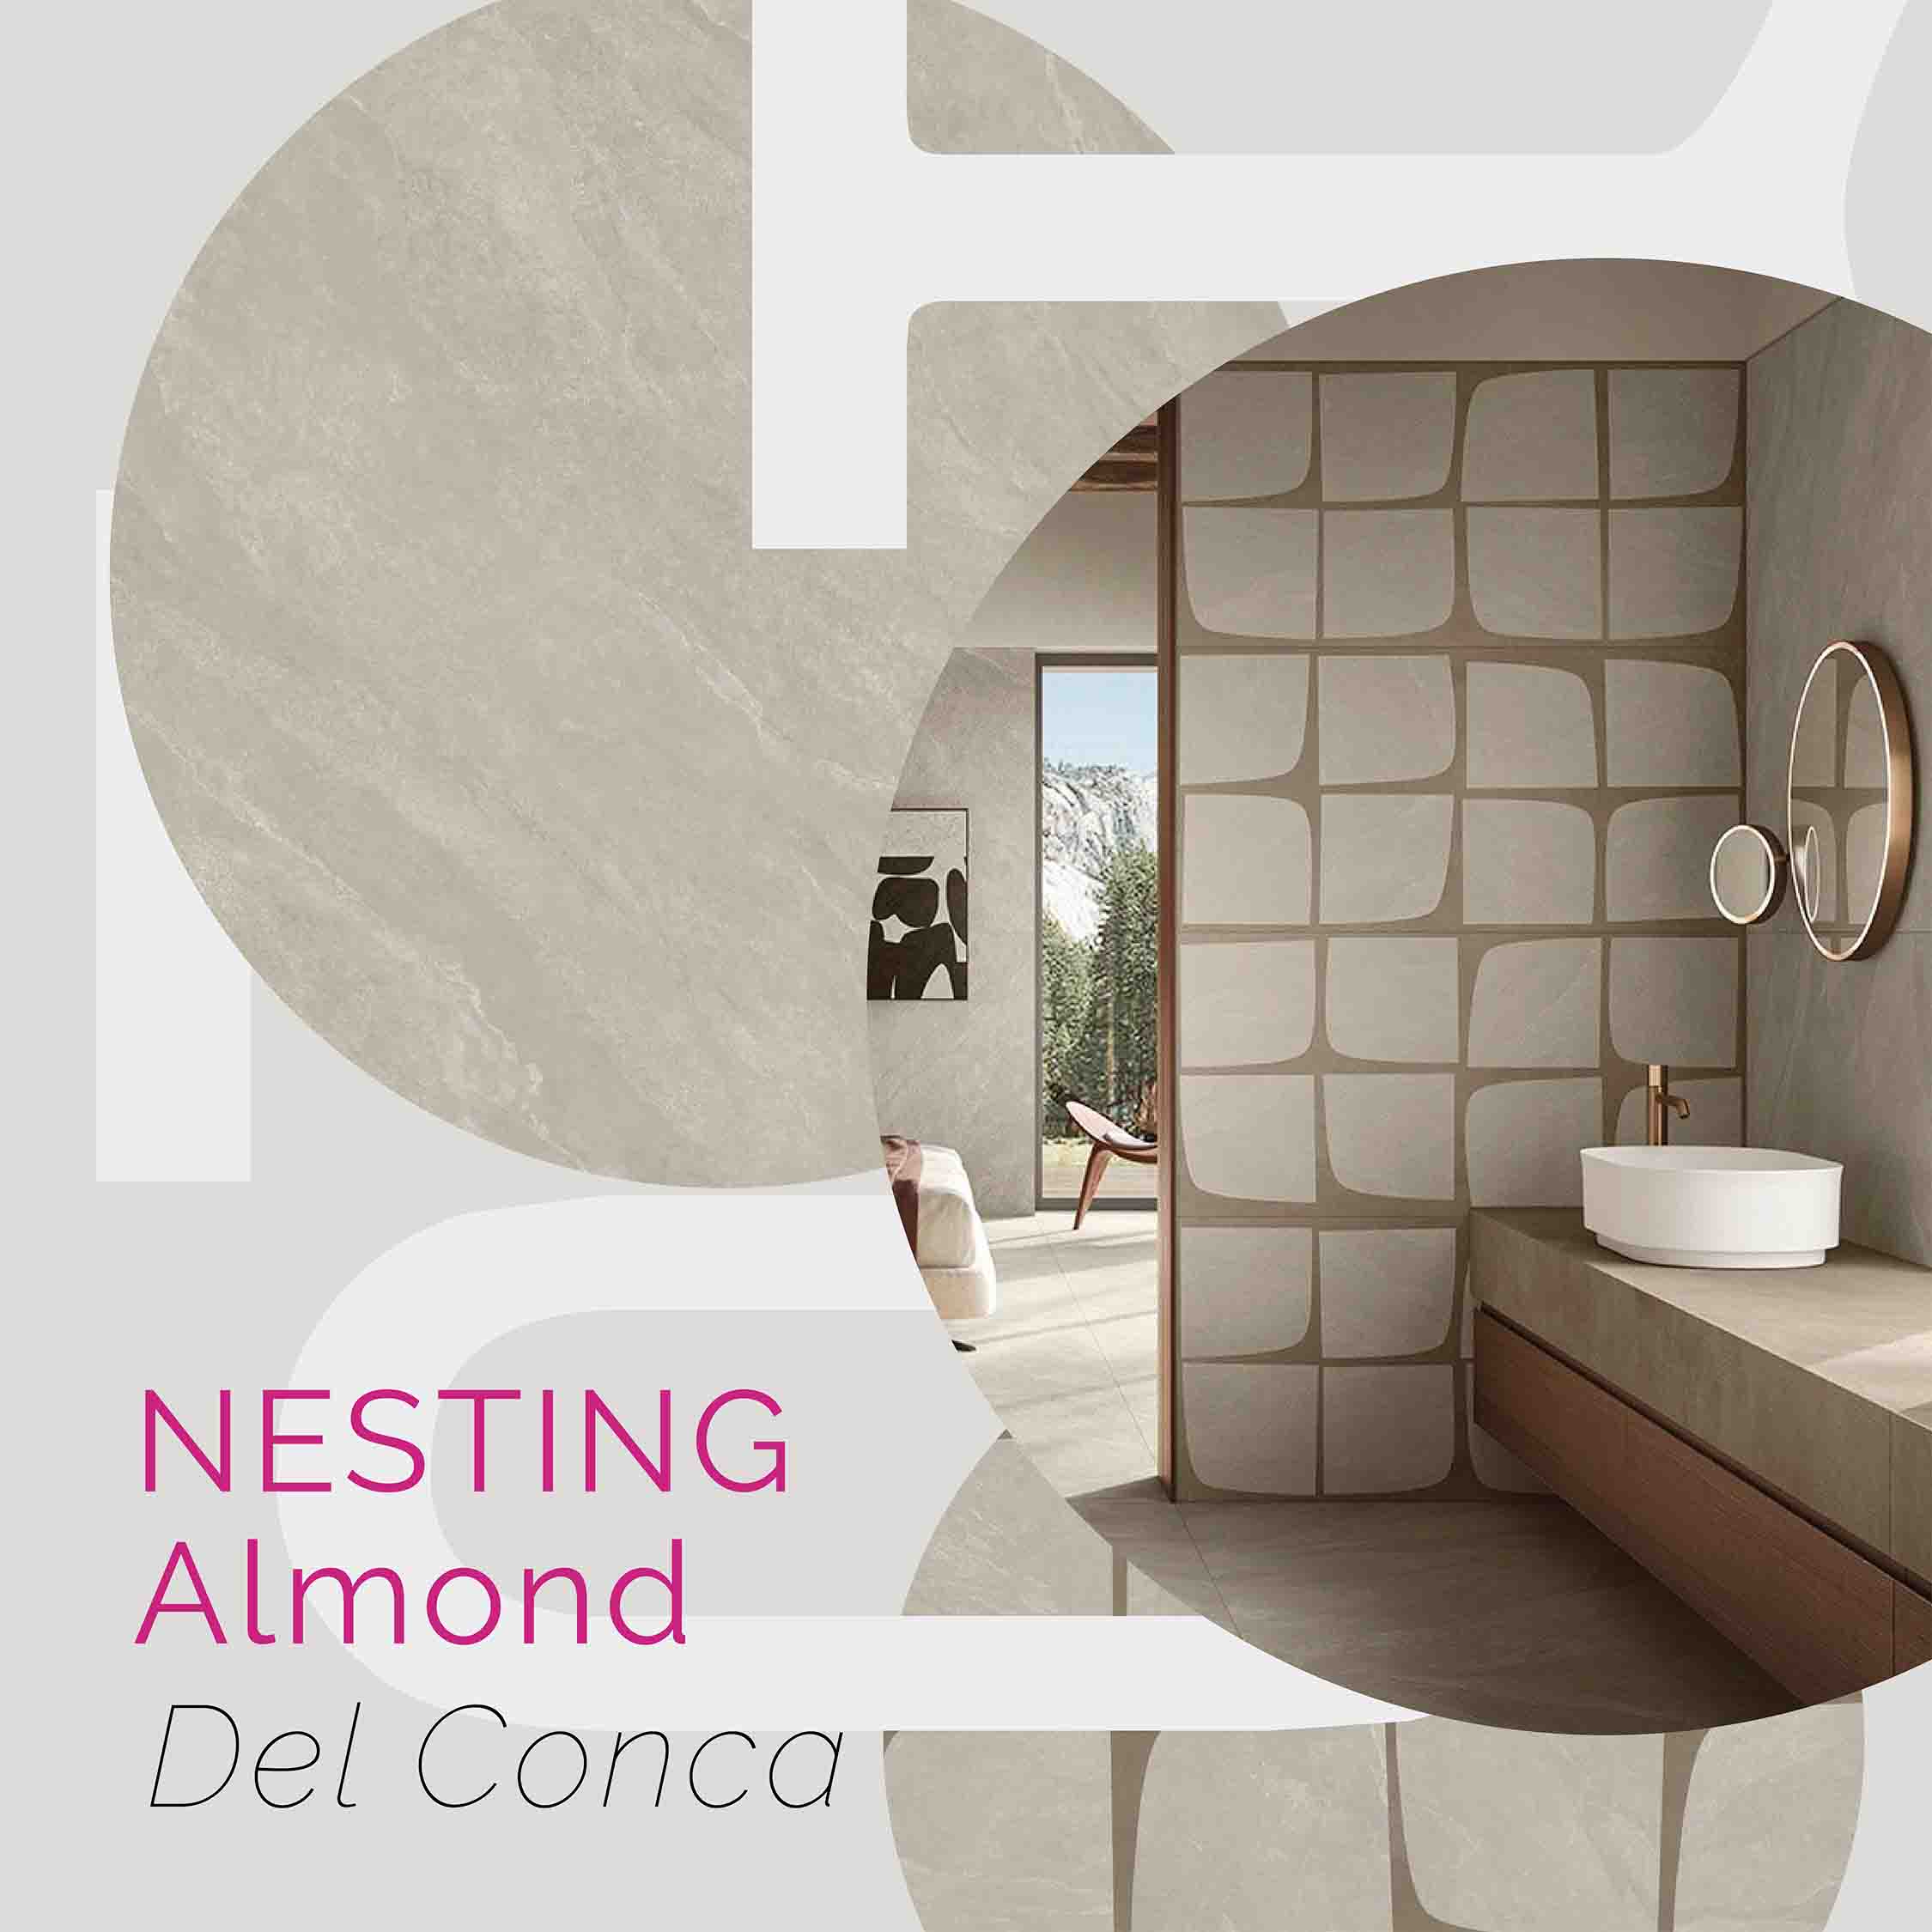 Nesting Del Conca